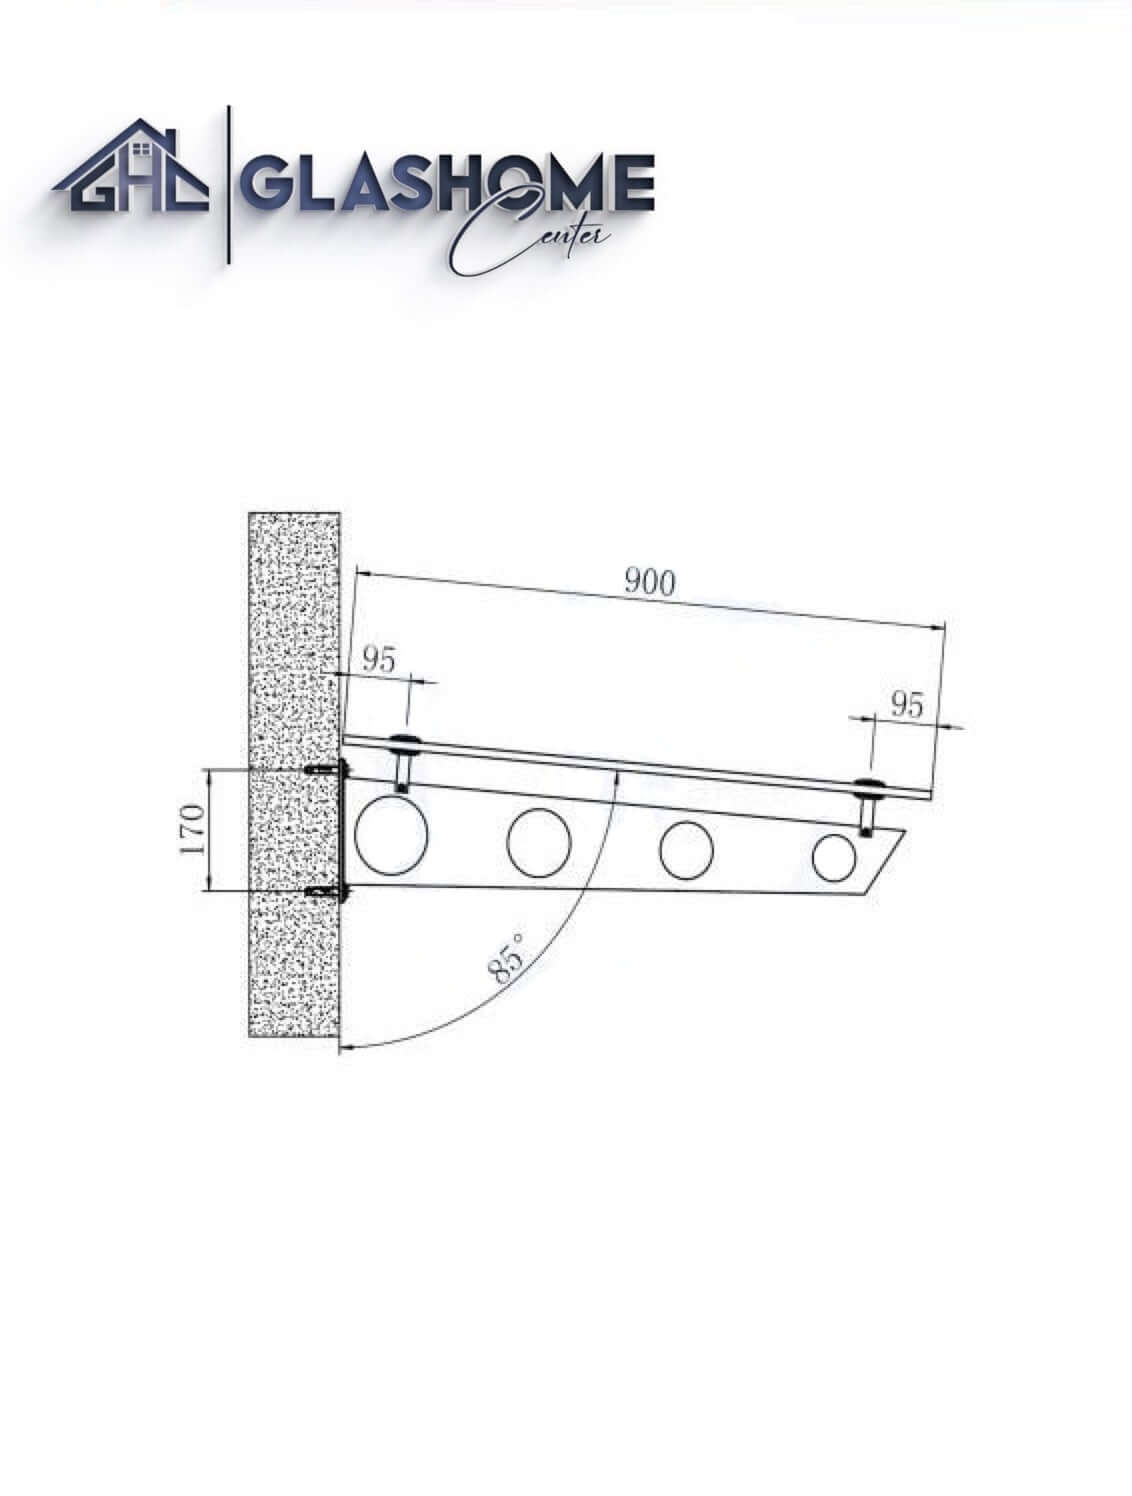 GlasHomeCenter - Glasvordach - Milchglas - 230x90cm - 13,1mm VSG - incl. 3 Edelstahlhalterungen variante "Stoccolma"